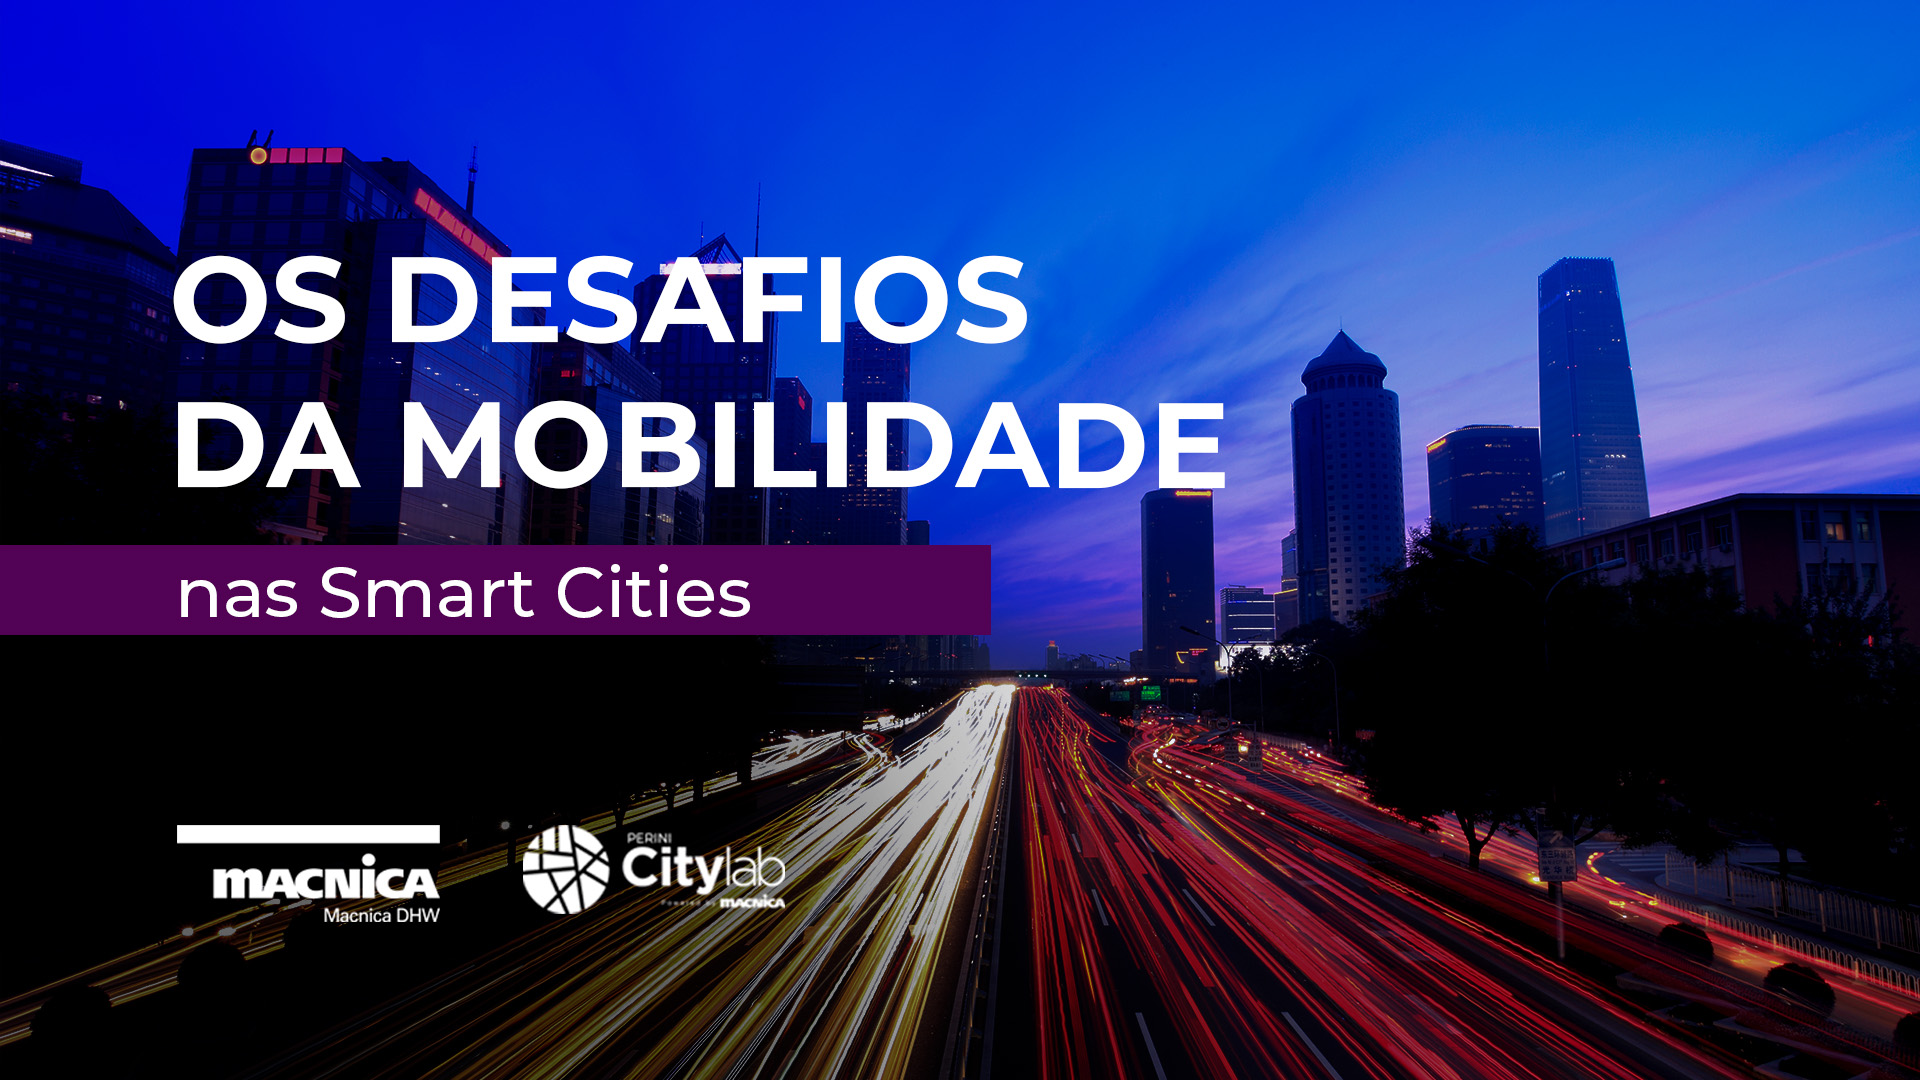 Os desafios da mobilidade nas Smart Cities